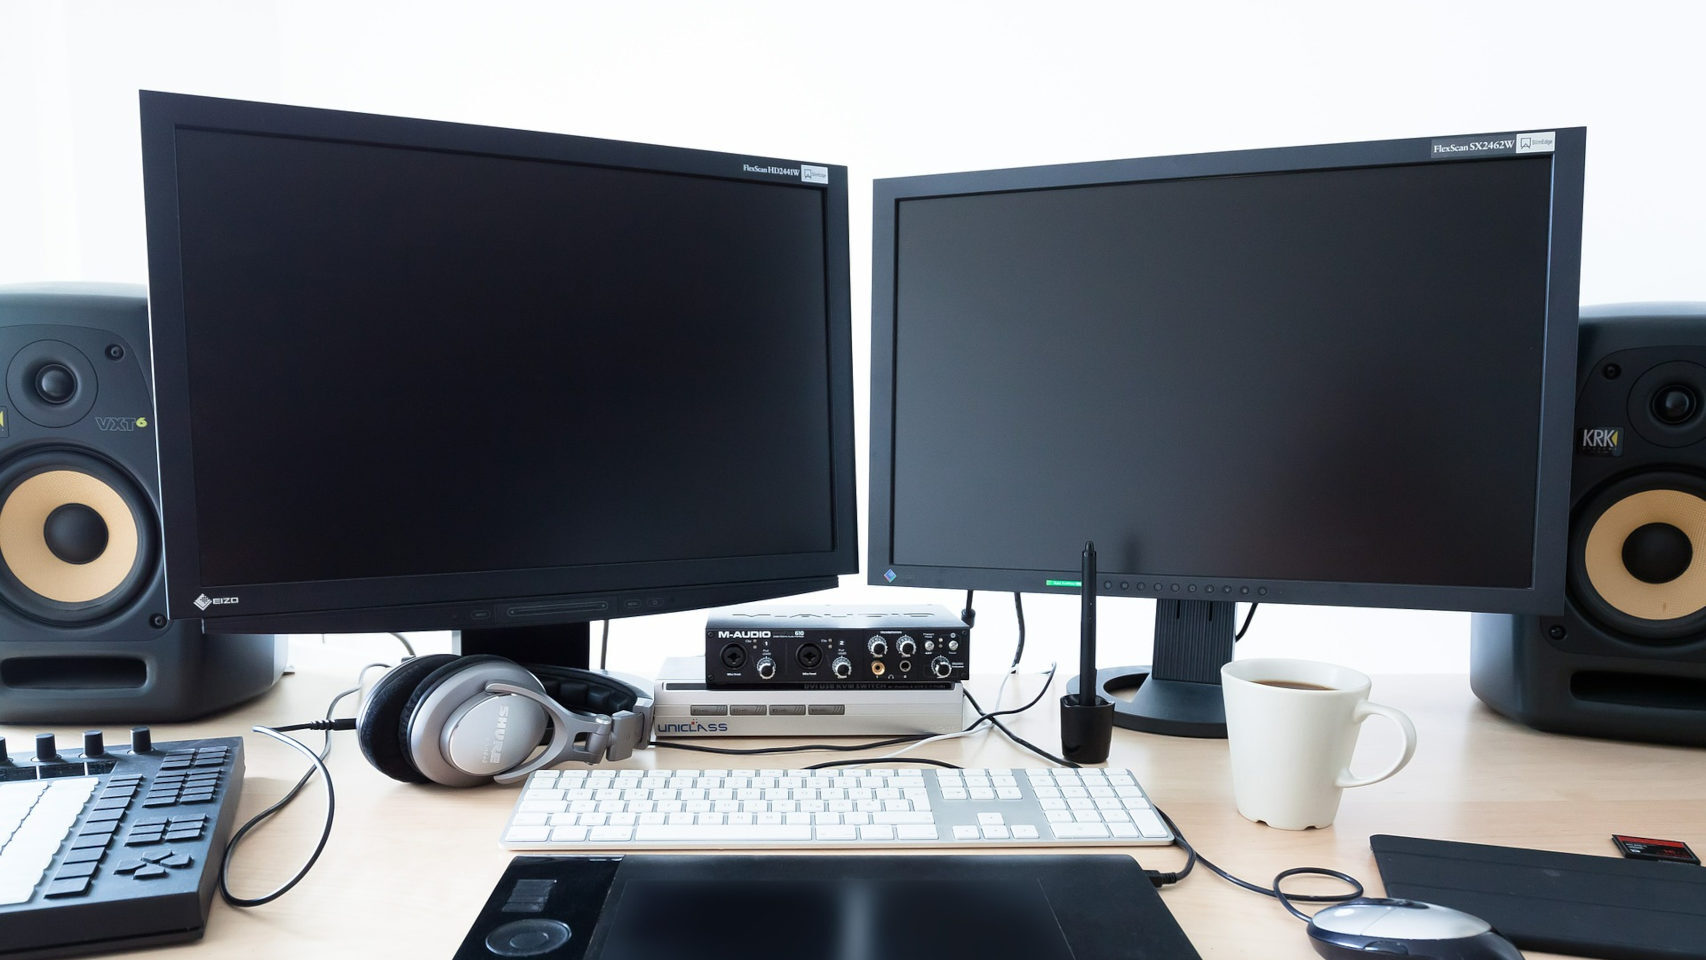 Muchos creadores y trabajadores prefieren usar dos pantallas en el ordenador